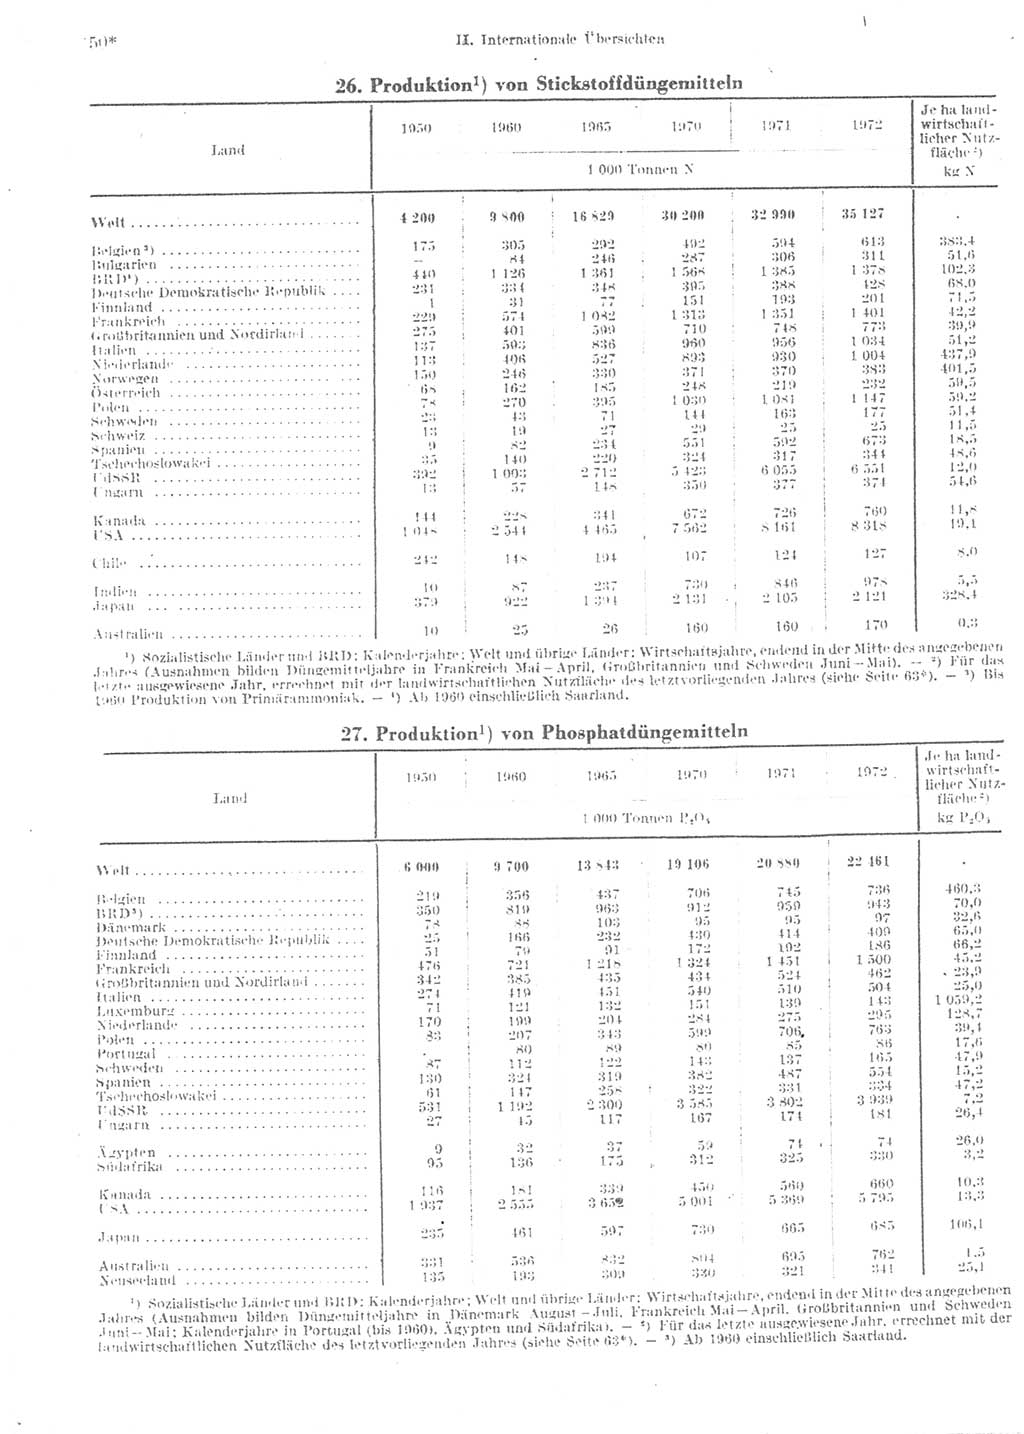 Statistisches Jahrbuch der Deutschen Demokratischen Republik (DDR) 1974, Seite 50 (Stat. Jb. DDR 1974, S. 50)